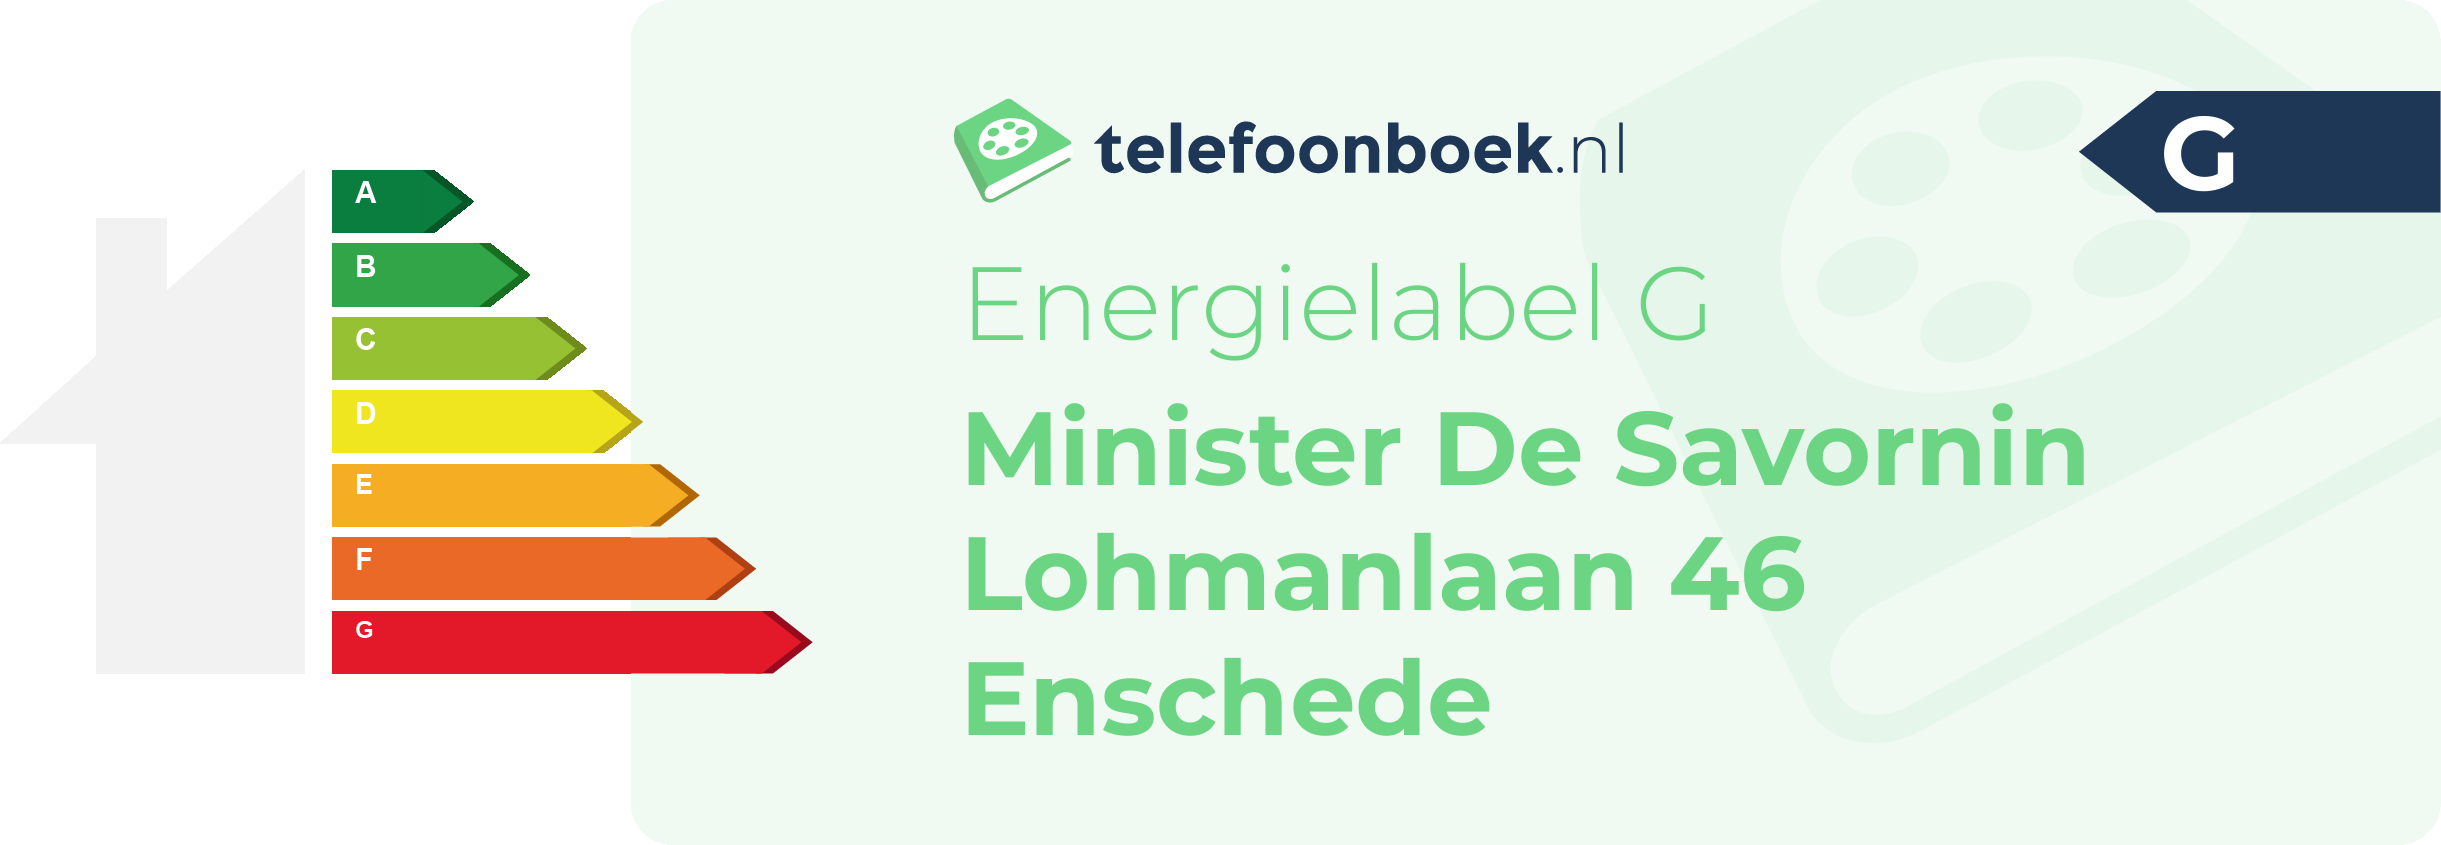 Energielabel Minister De Savornin Lohmanlaan 46 Enschede